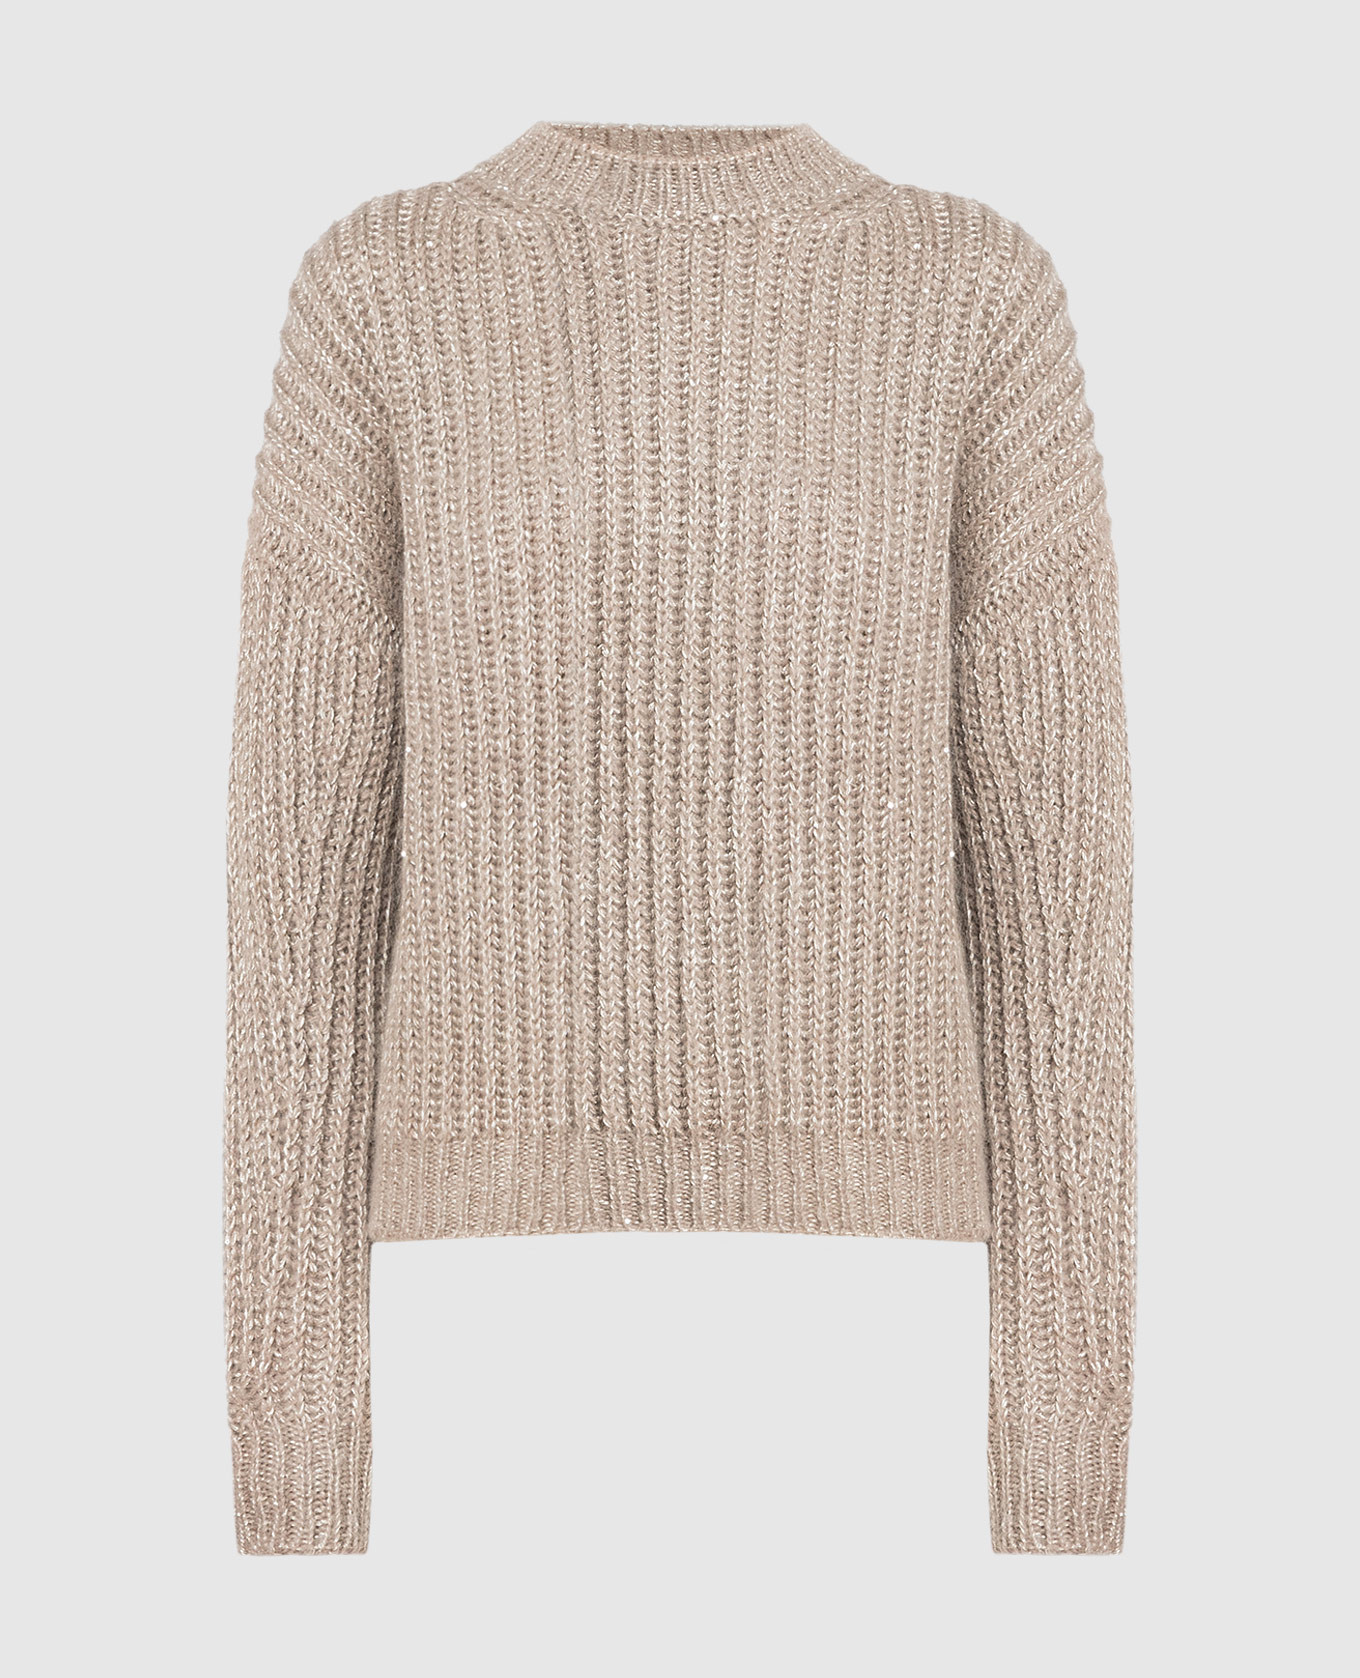 Beige sweater with lurex